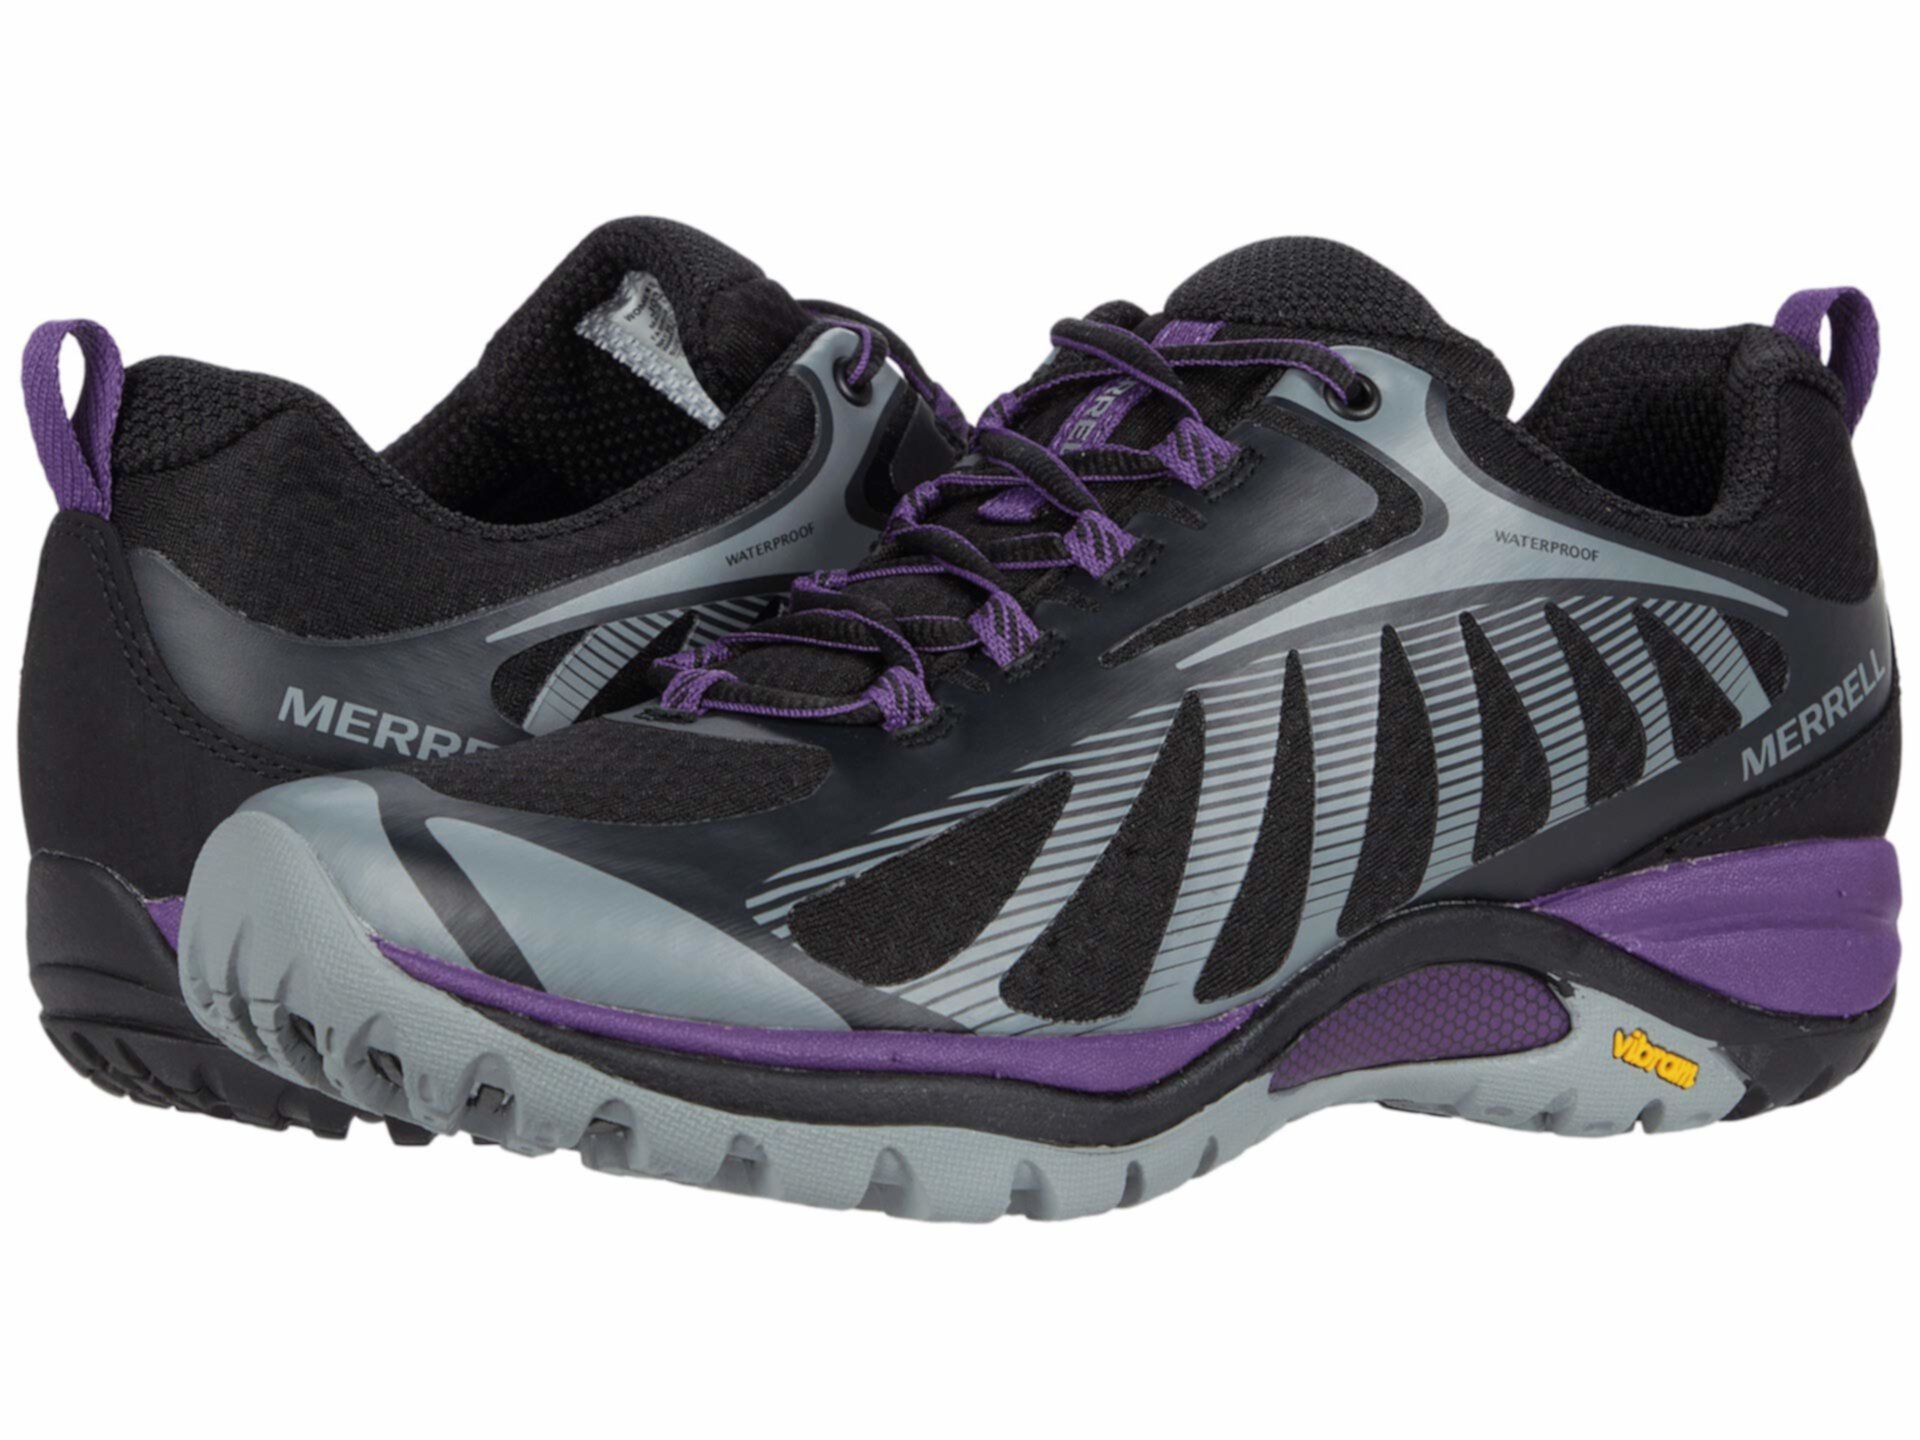 Непромокаемые ботинки для походов Merrell Siren Edge 3 для женщин Merrell